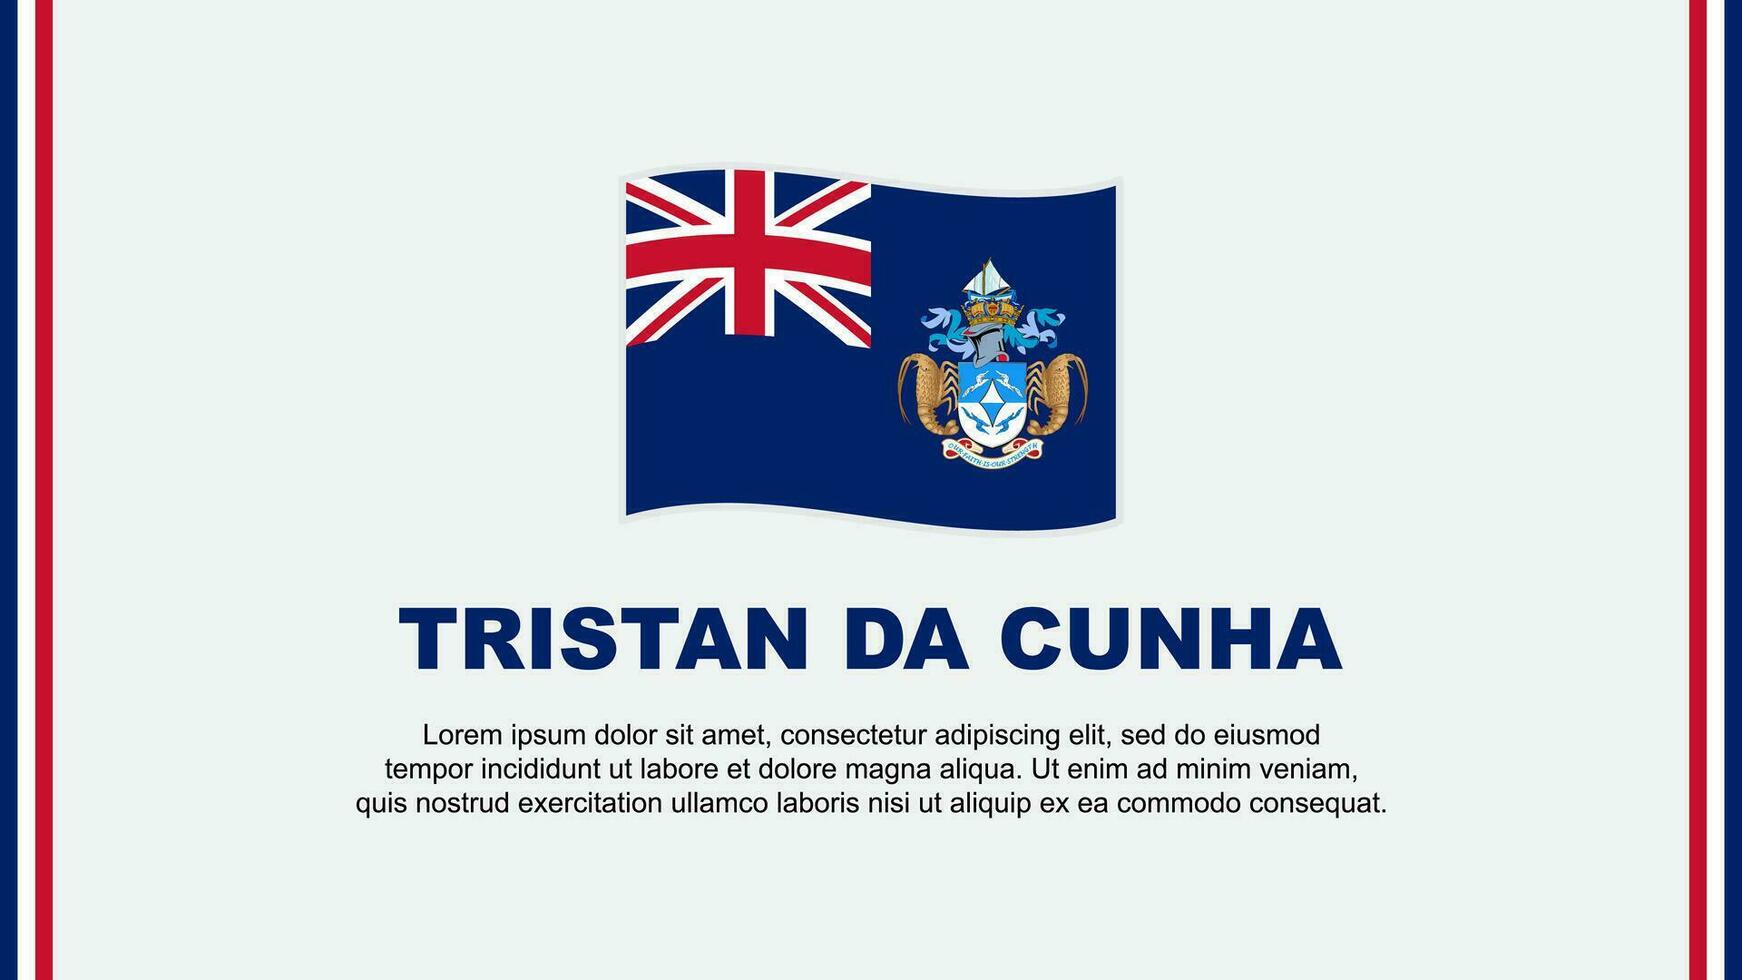 Tristan Da Cunha Flag Abstract Background Design Template. Tristan Da Cunha Independence Day Banner Social Media Vector Illustration. Tristan Da Cunha Cartoon